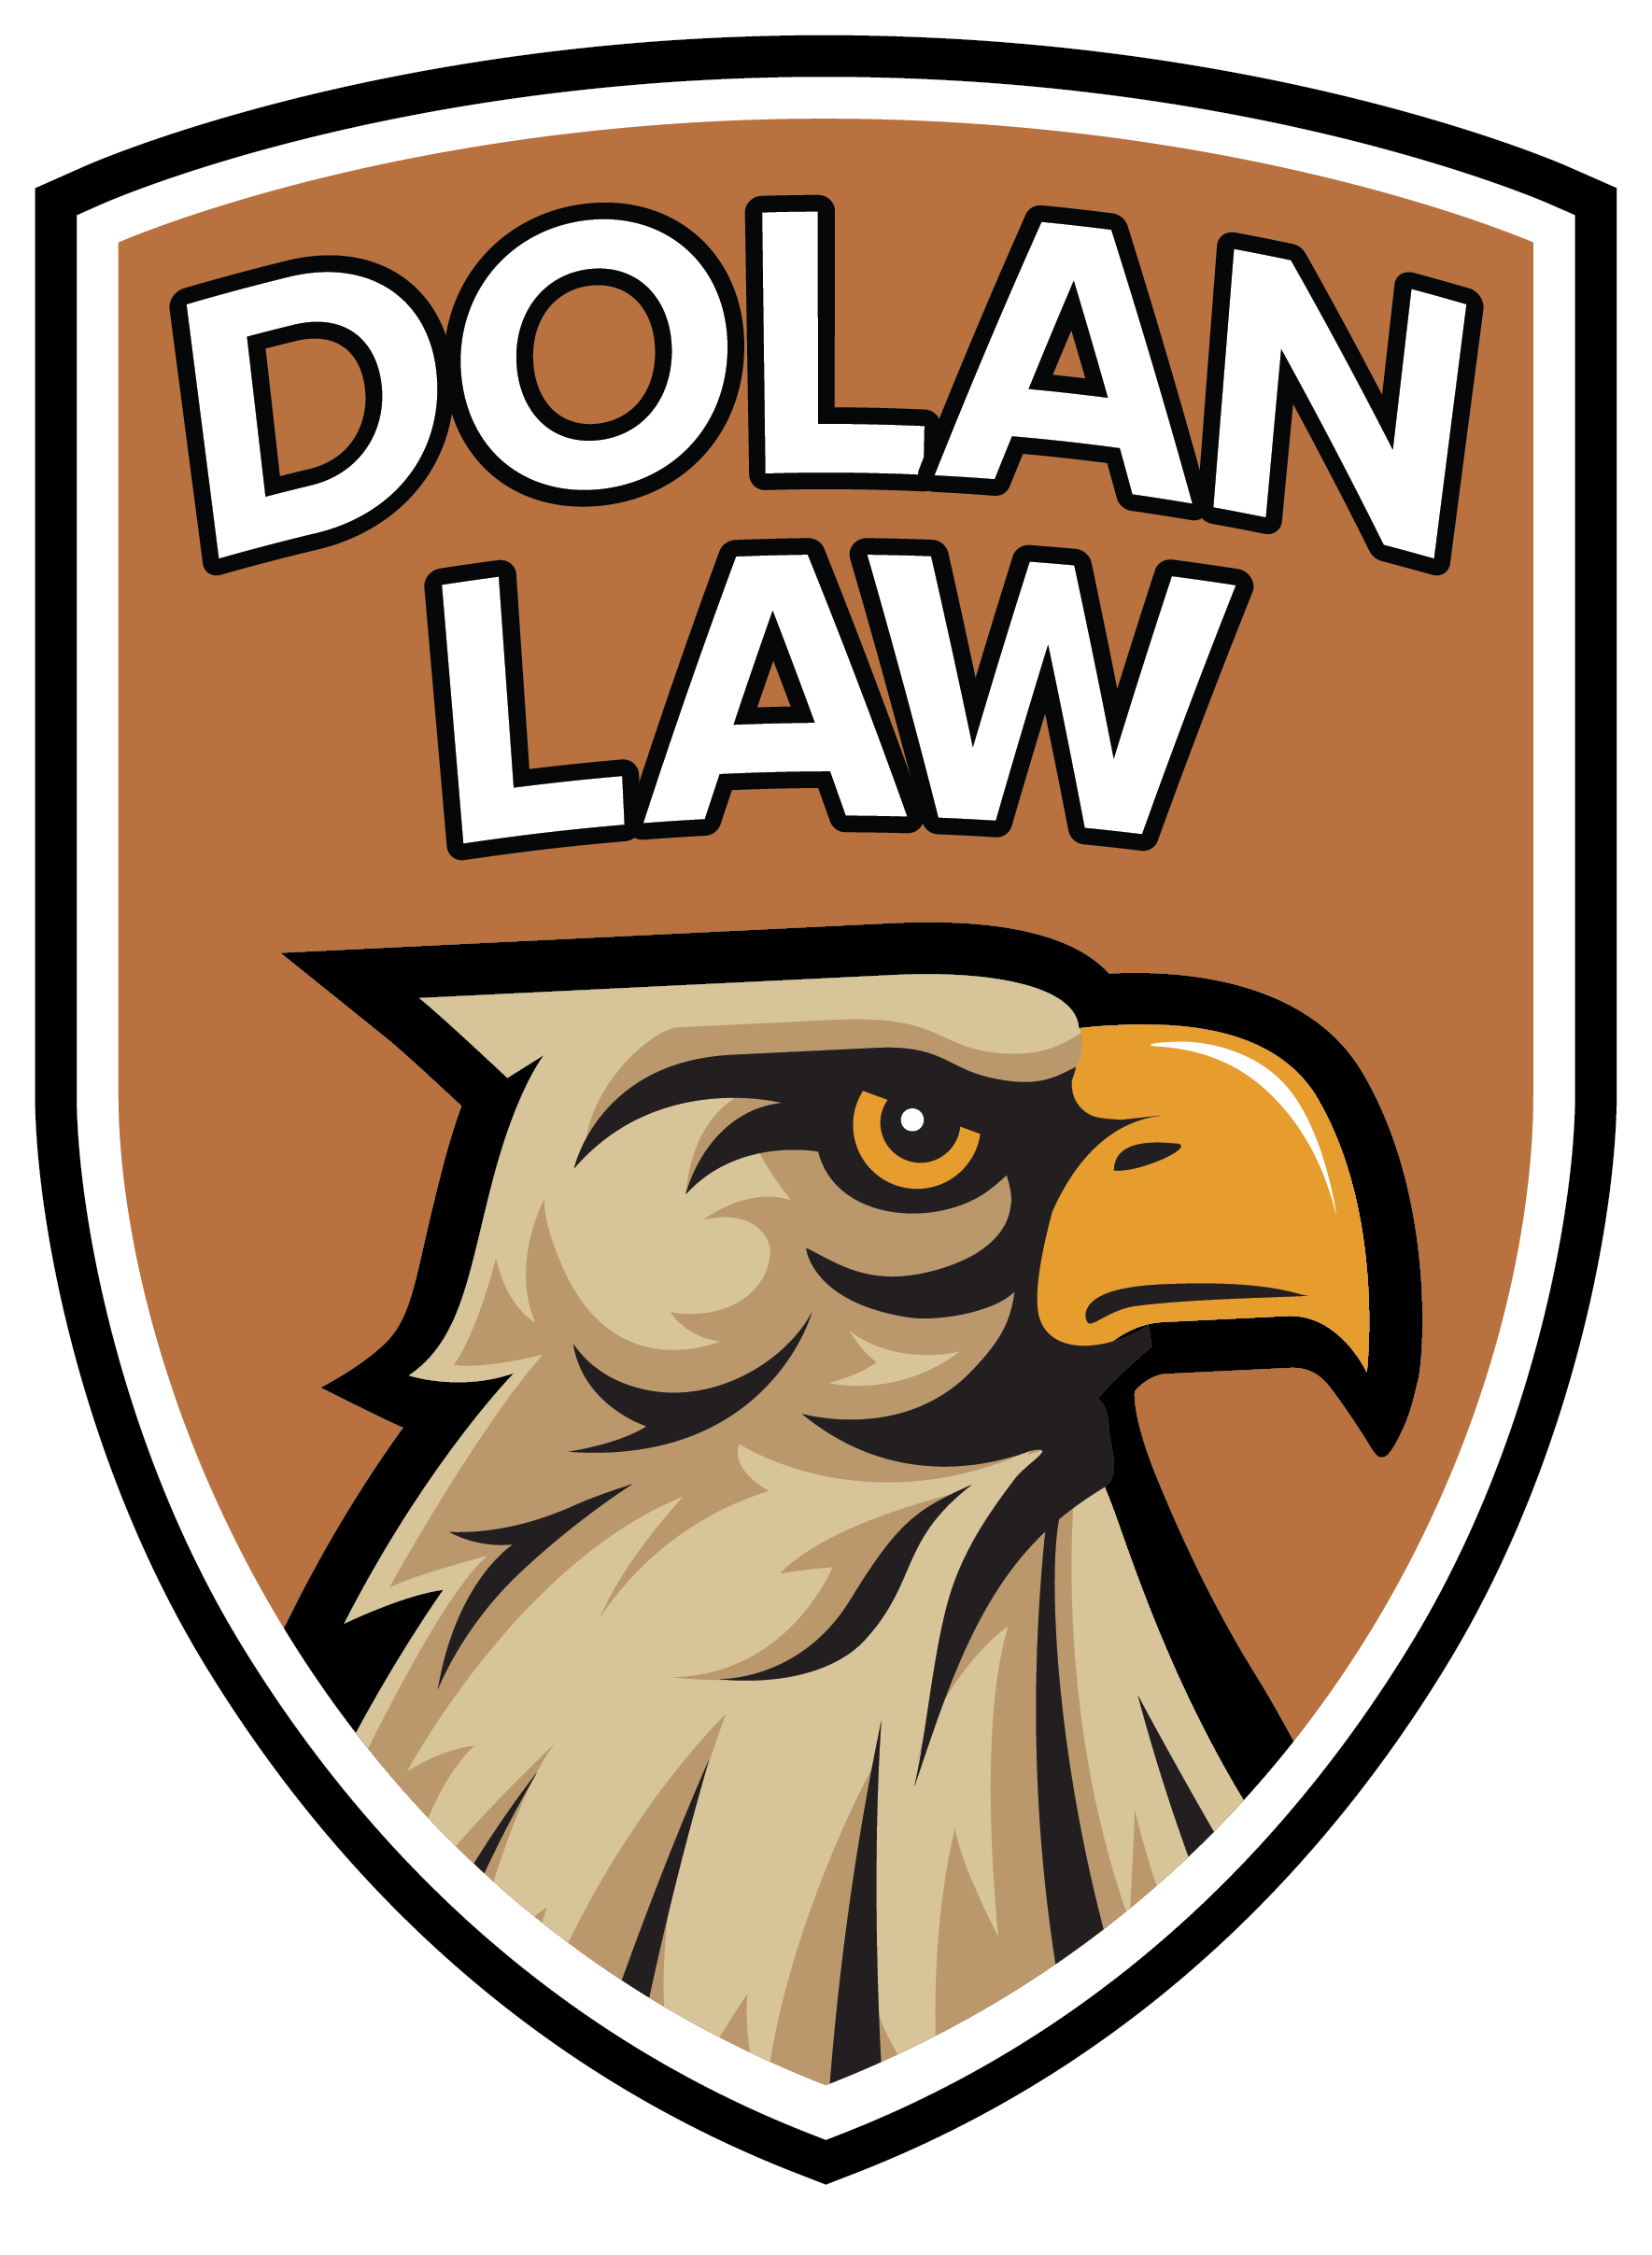 Dolan Law logo